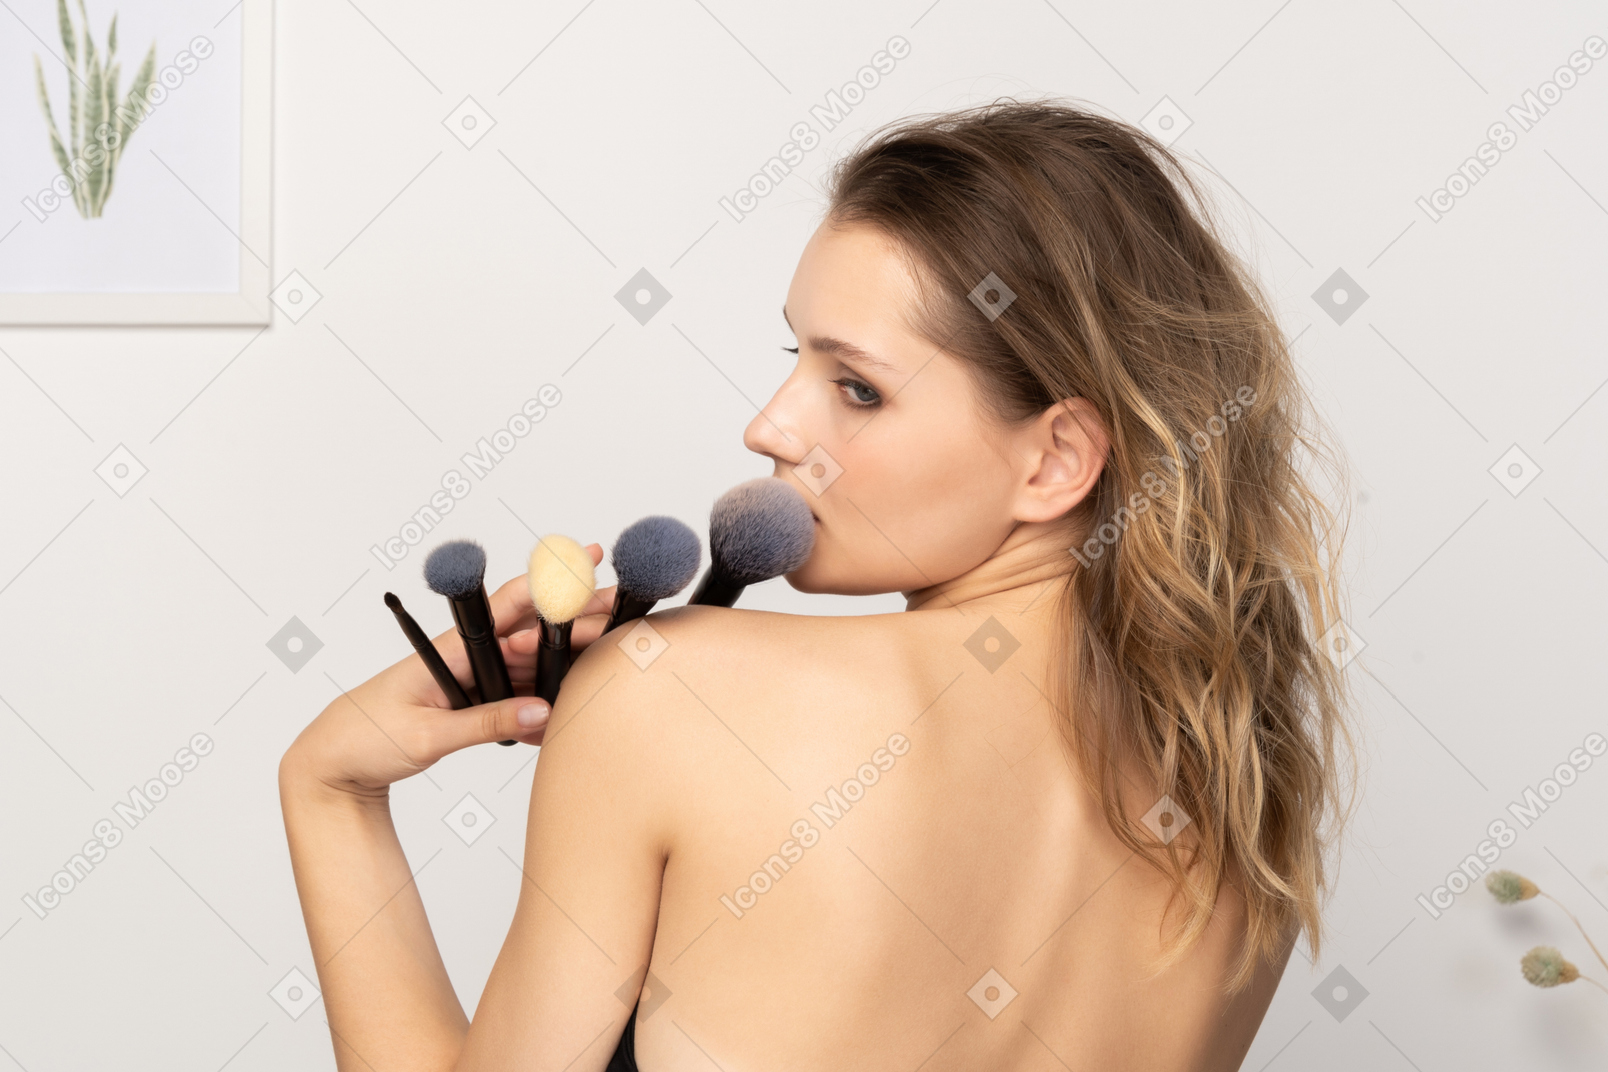 Вид сзади чувственной молодой женщины, держащей кисти для макияжа